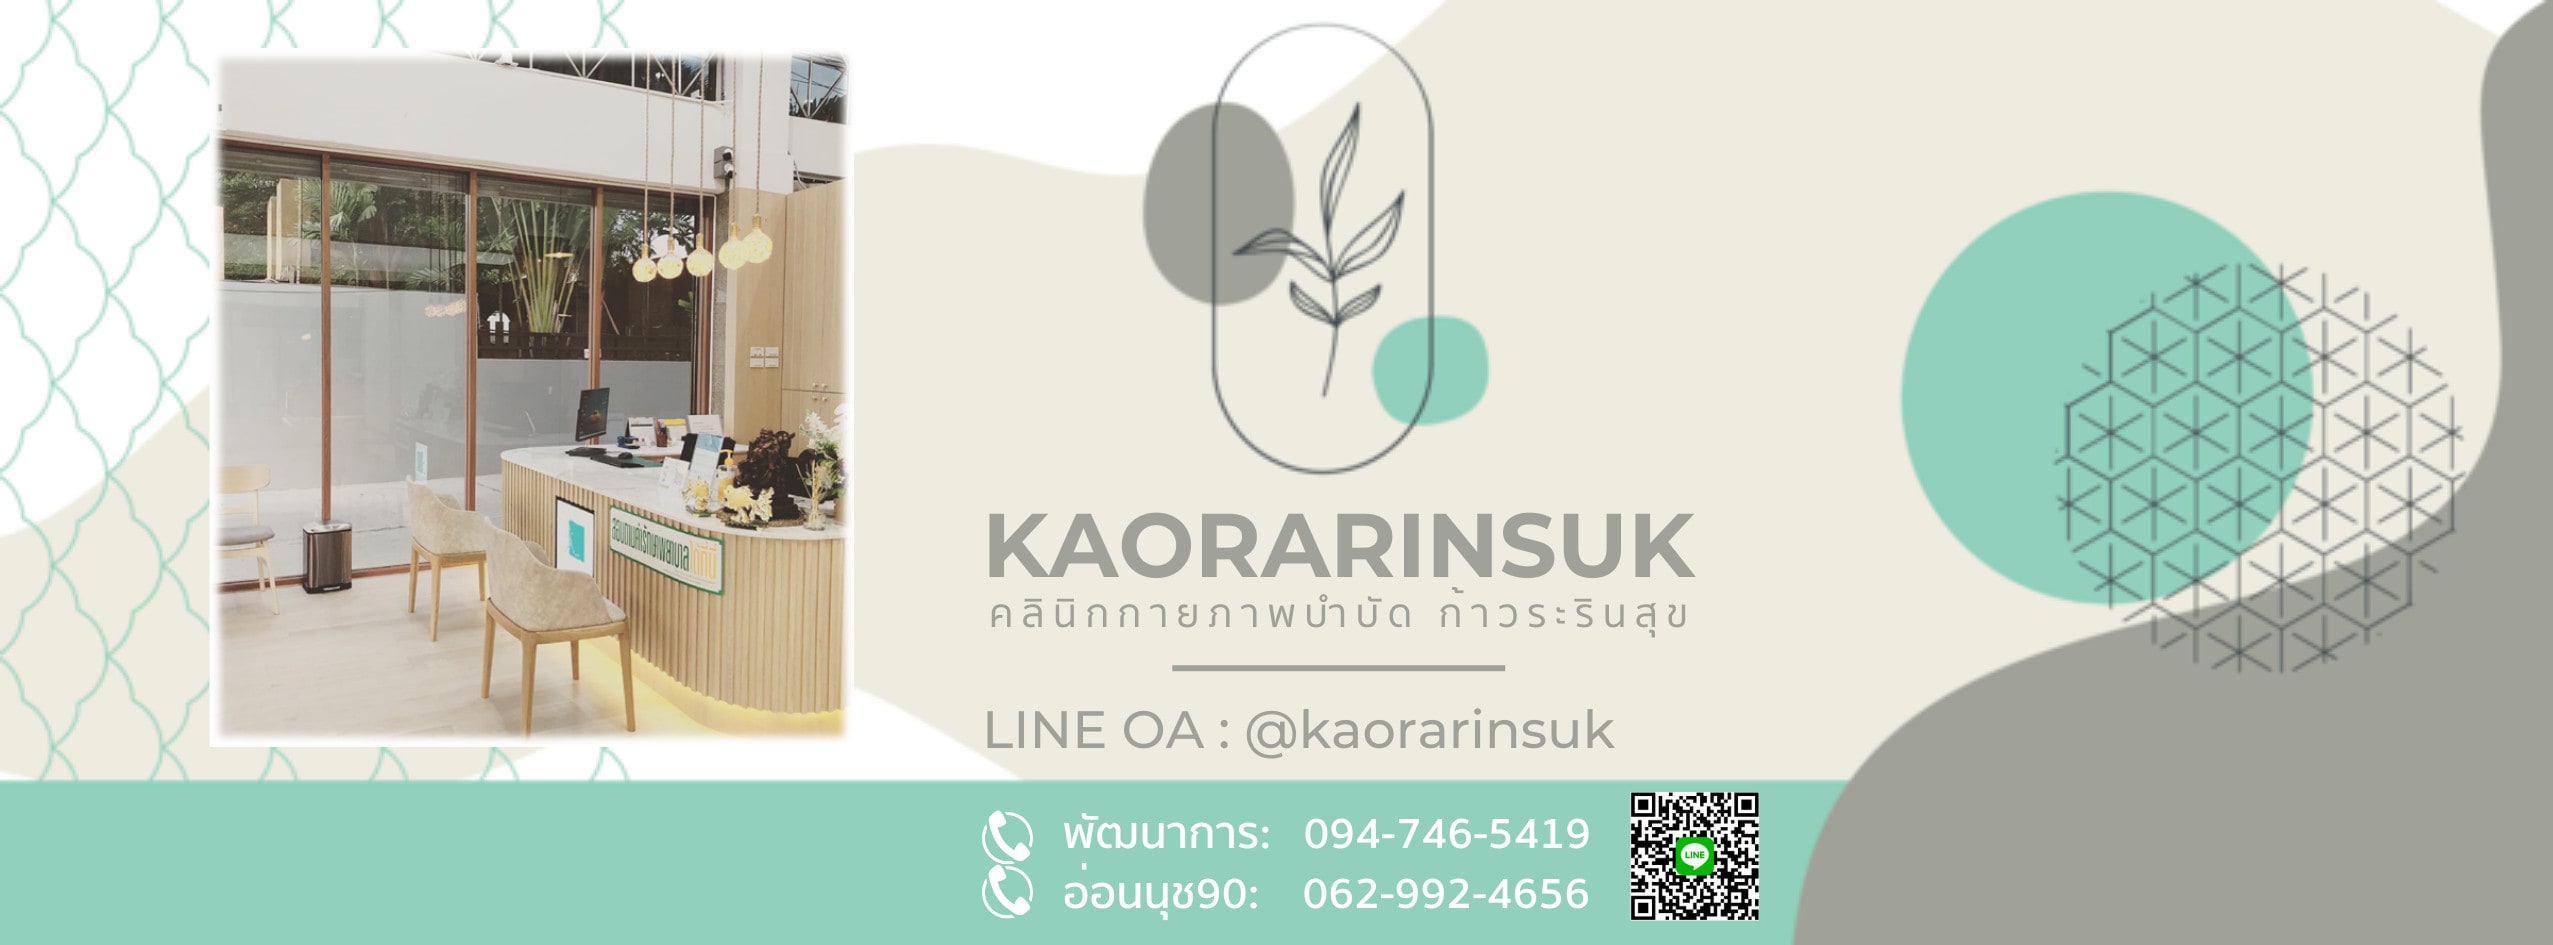 คลินิกกายภาพบำบัด Kaorarinsuk Clinic